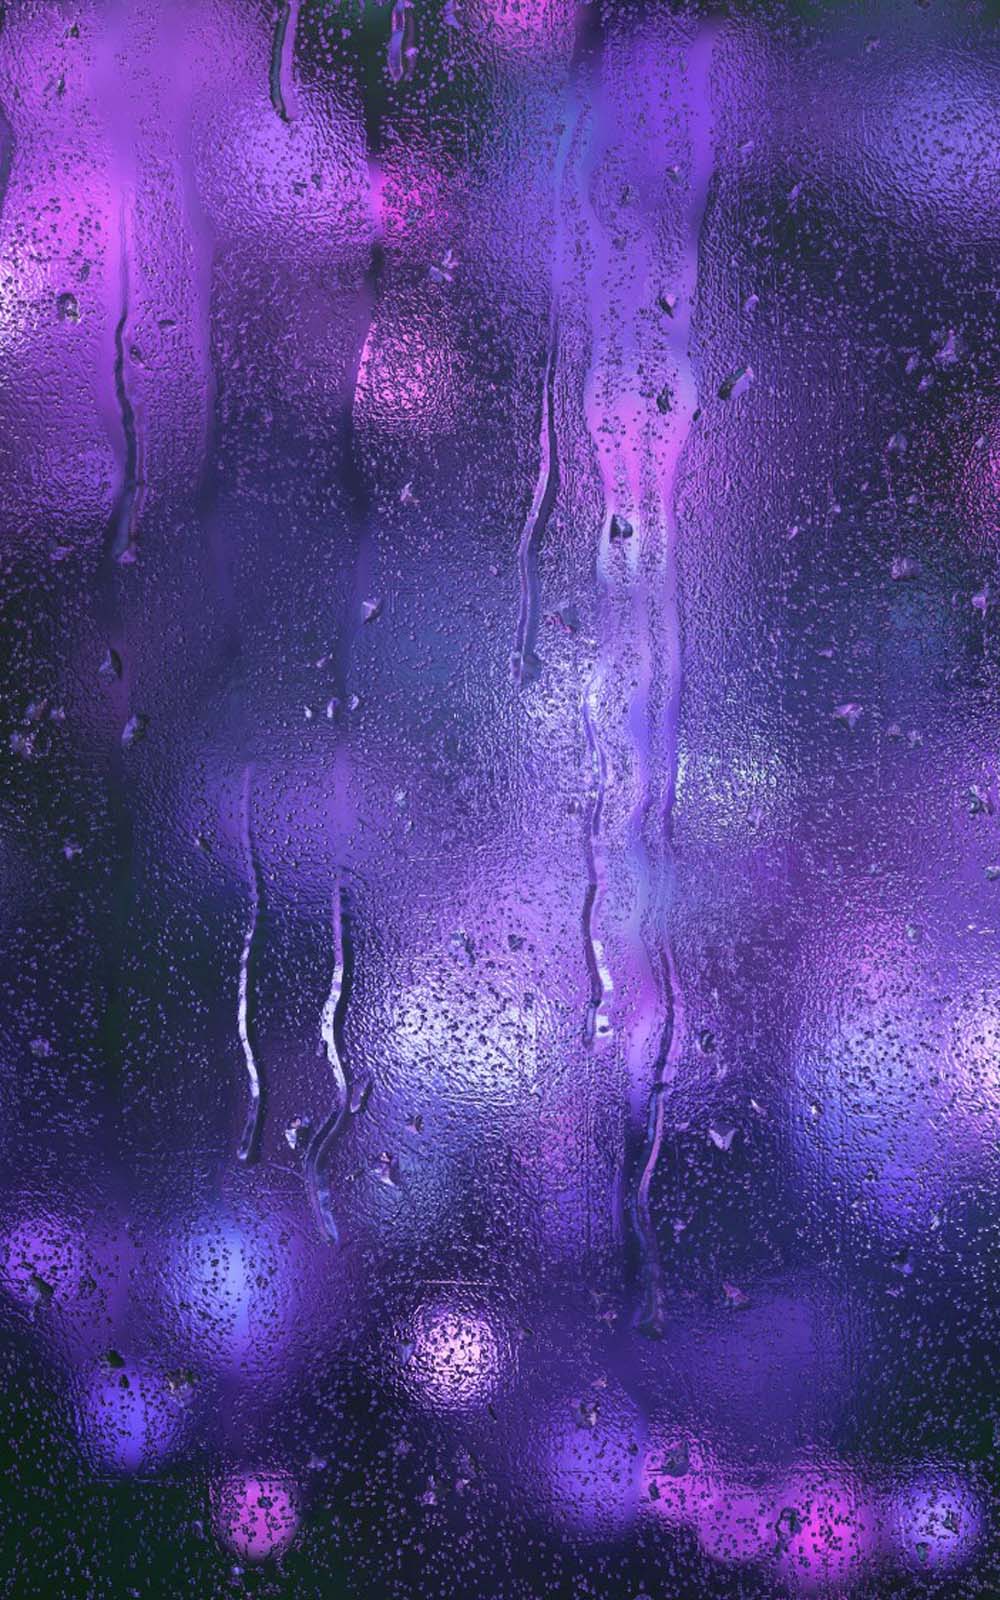 rain wallpaper hd for mobile,violet,purple,graphic design,sky,design